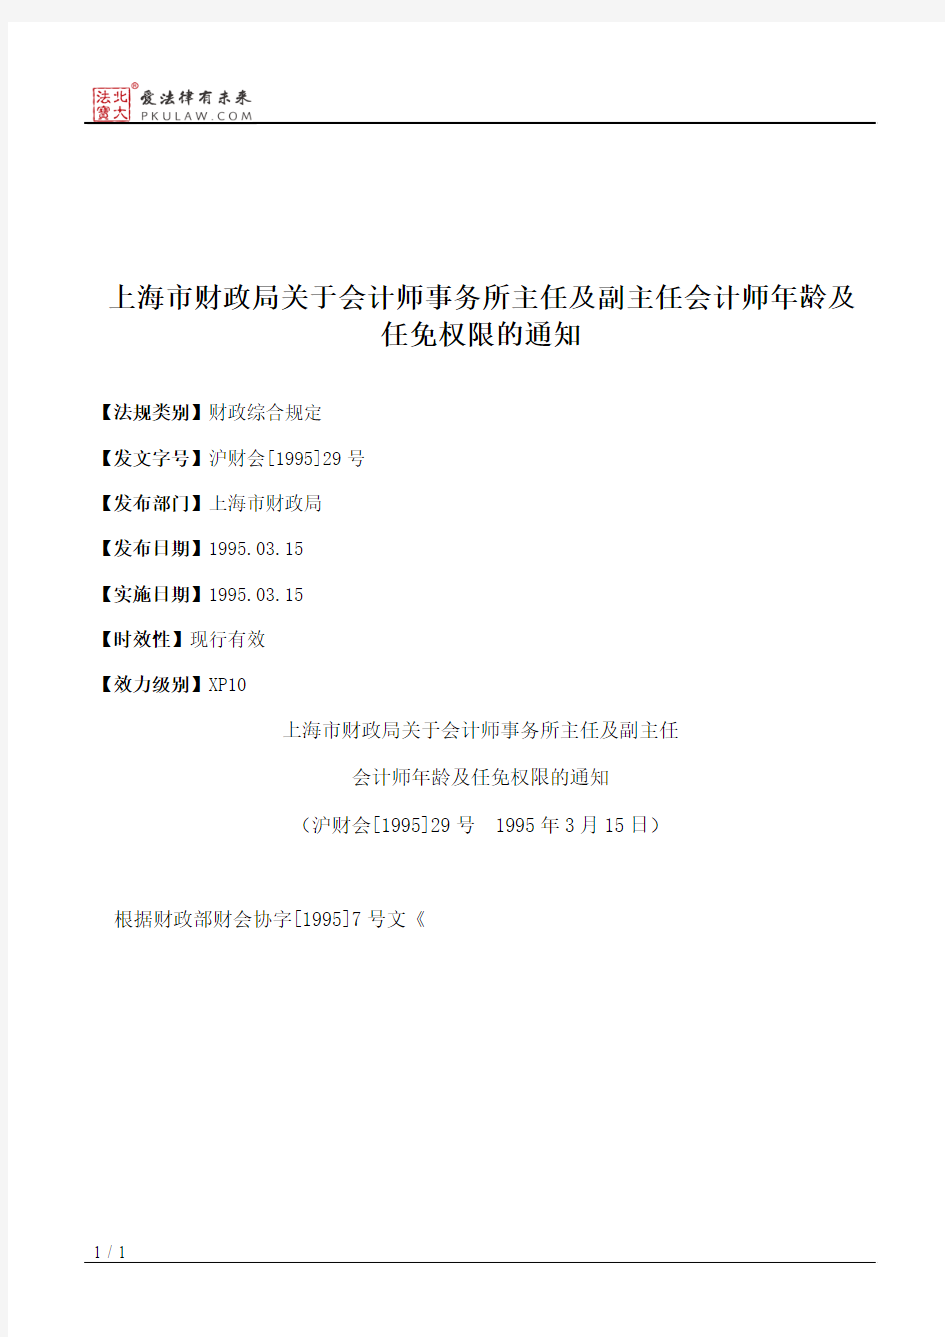 上海市财政局关于会计师事务所主任及副主任会计师年龄及任免权限的通知